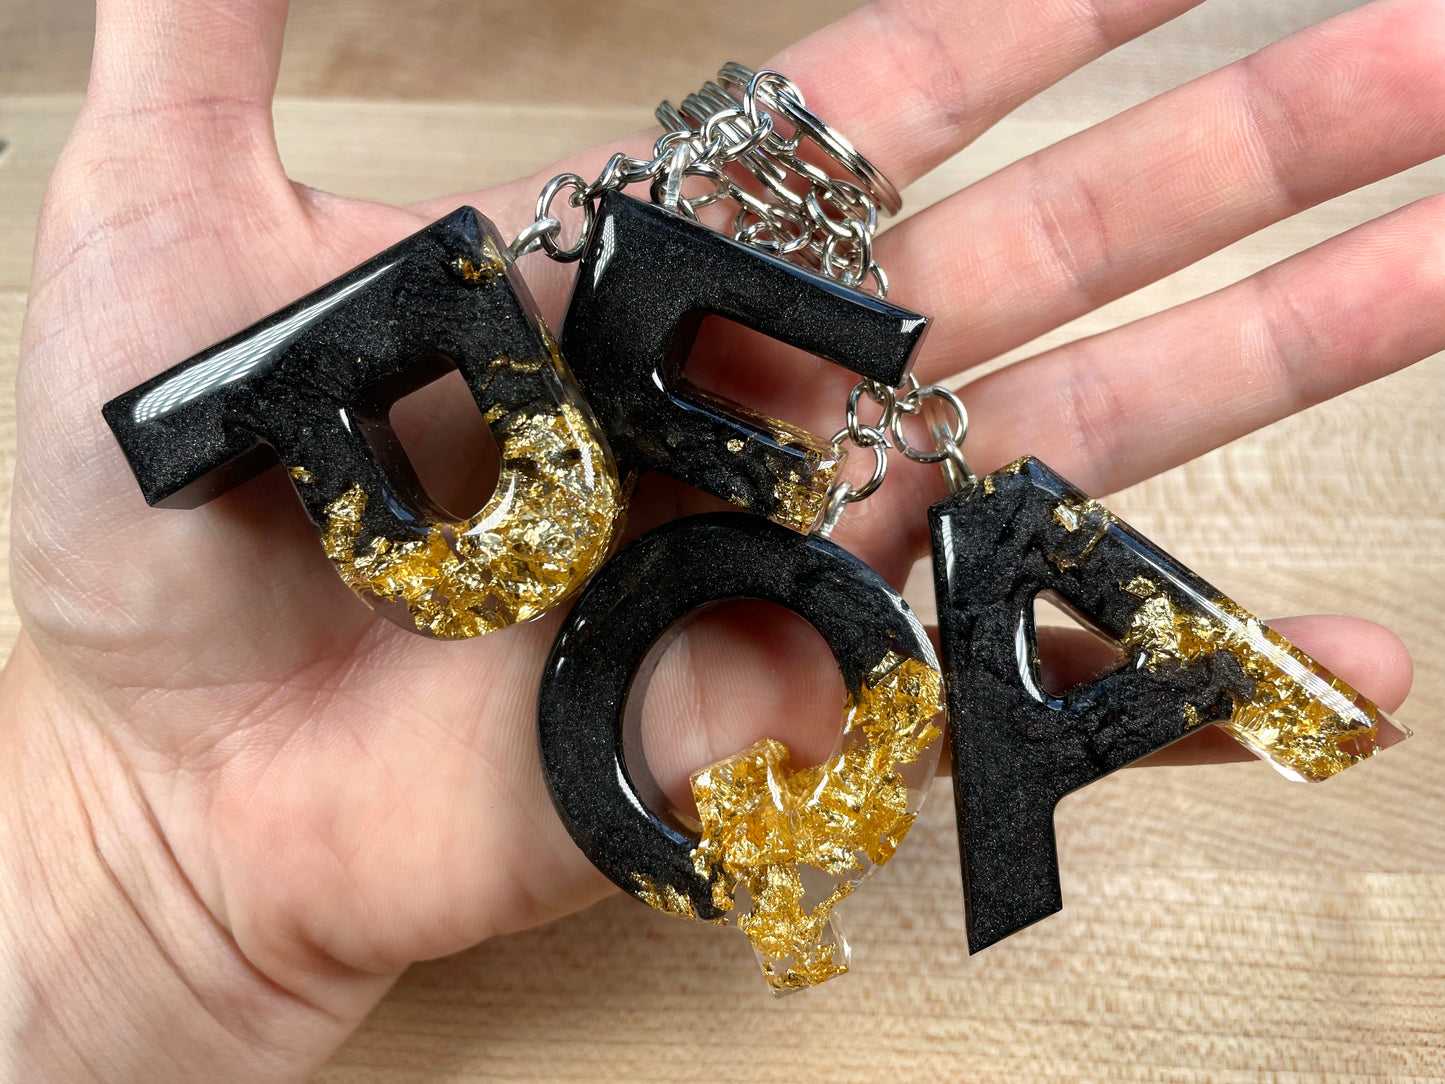 Resin Letter Keychain - Black & Gold Foil